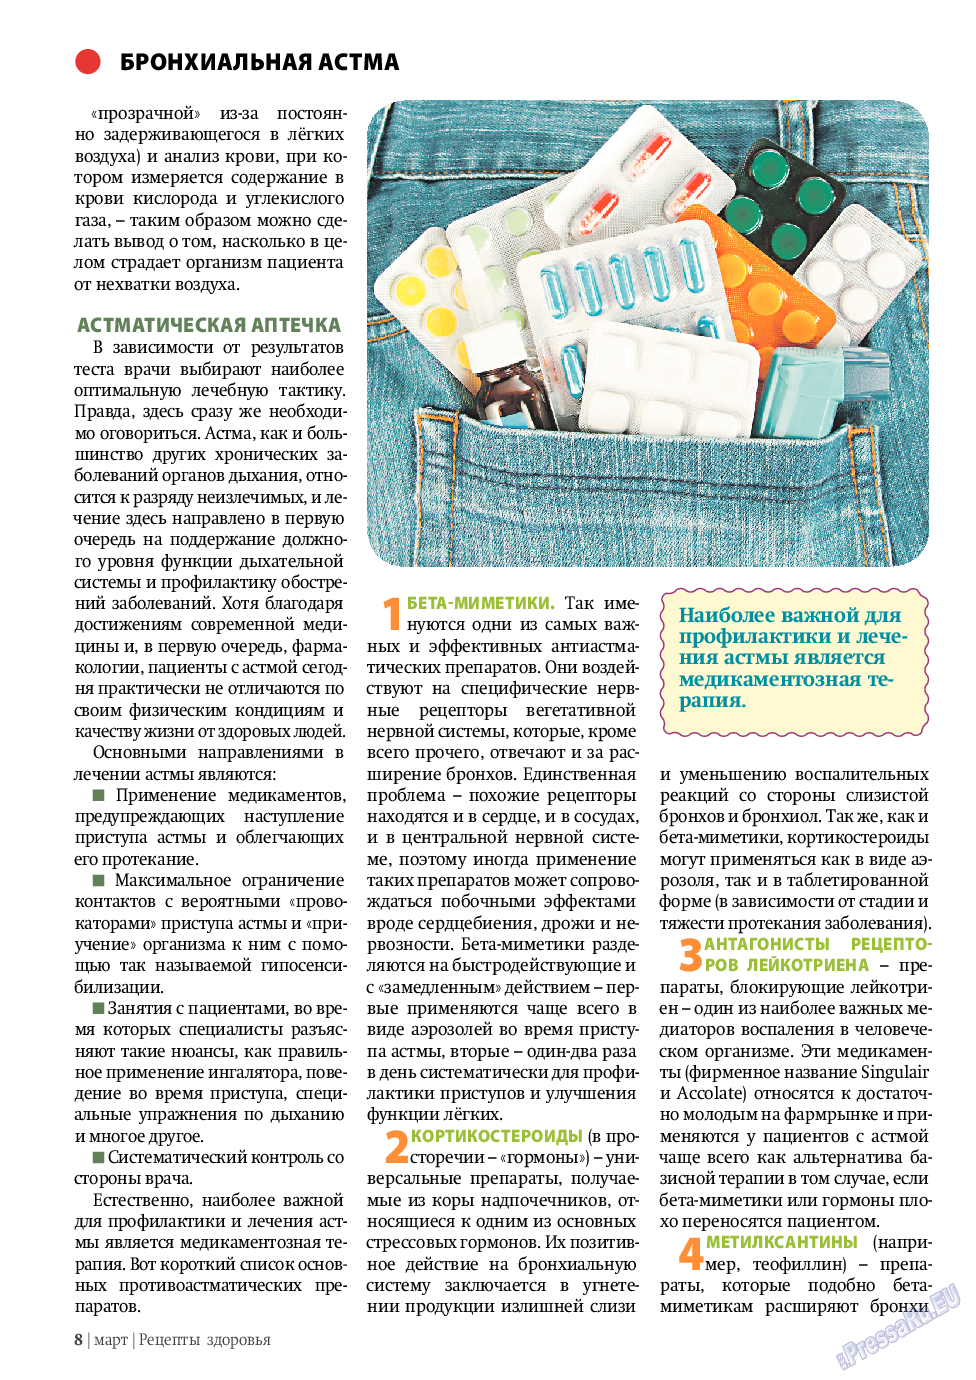 Рецепты здоровья, журнал. 2011 №3 стр.8